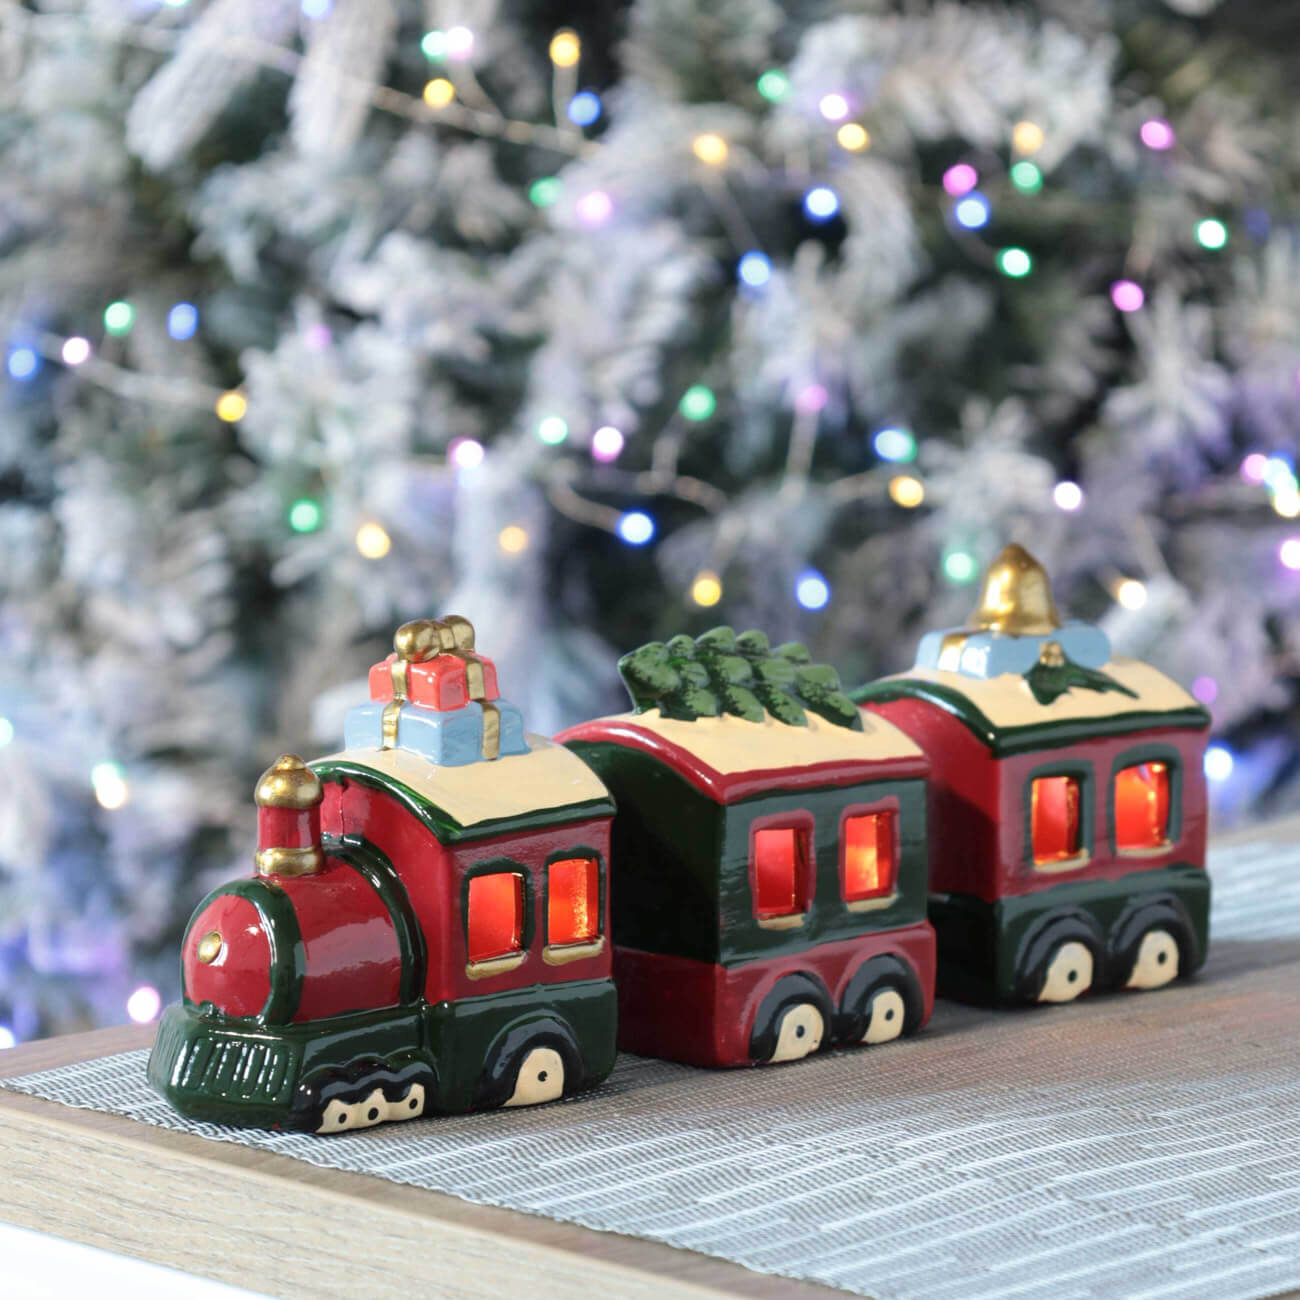 Статуэтка с подсветкой, 18 см, керамика, зелено-красная, Поезд, Christmas classic